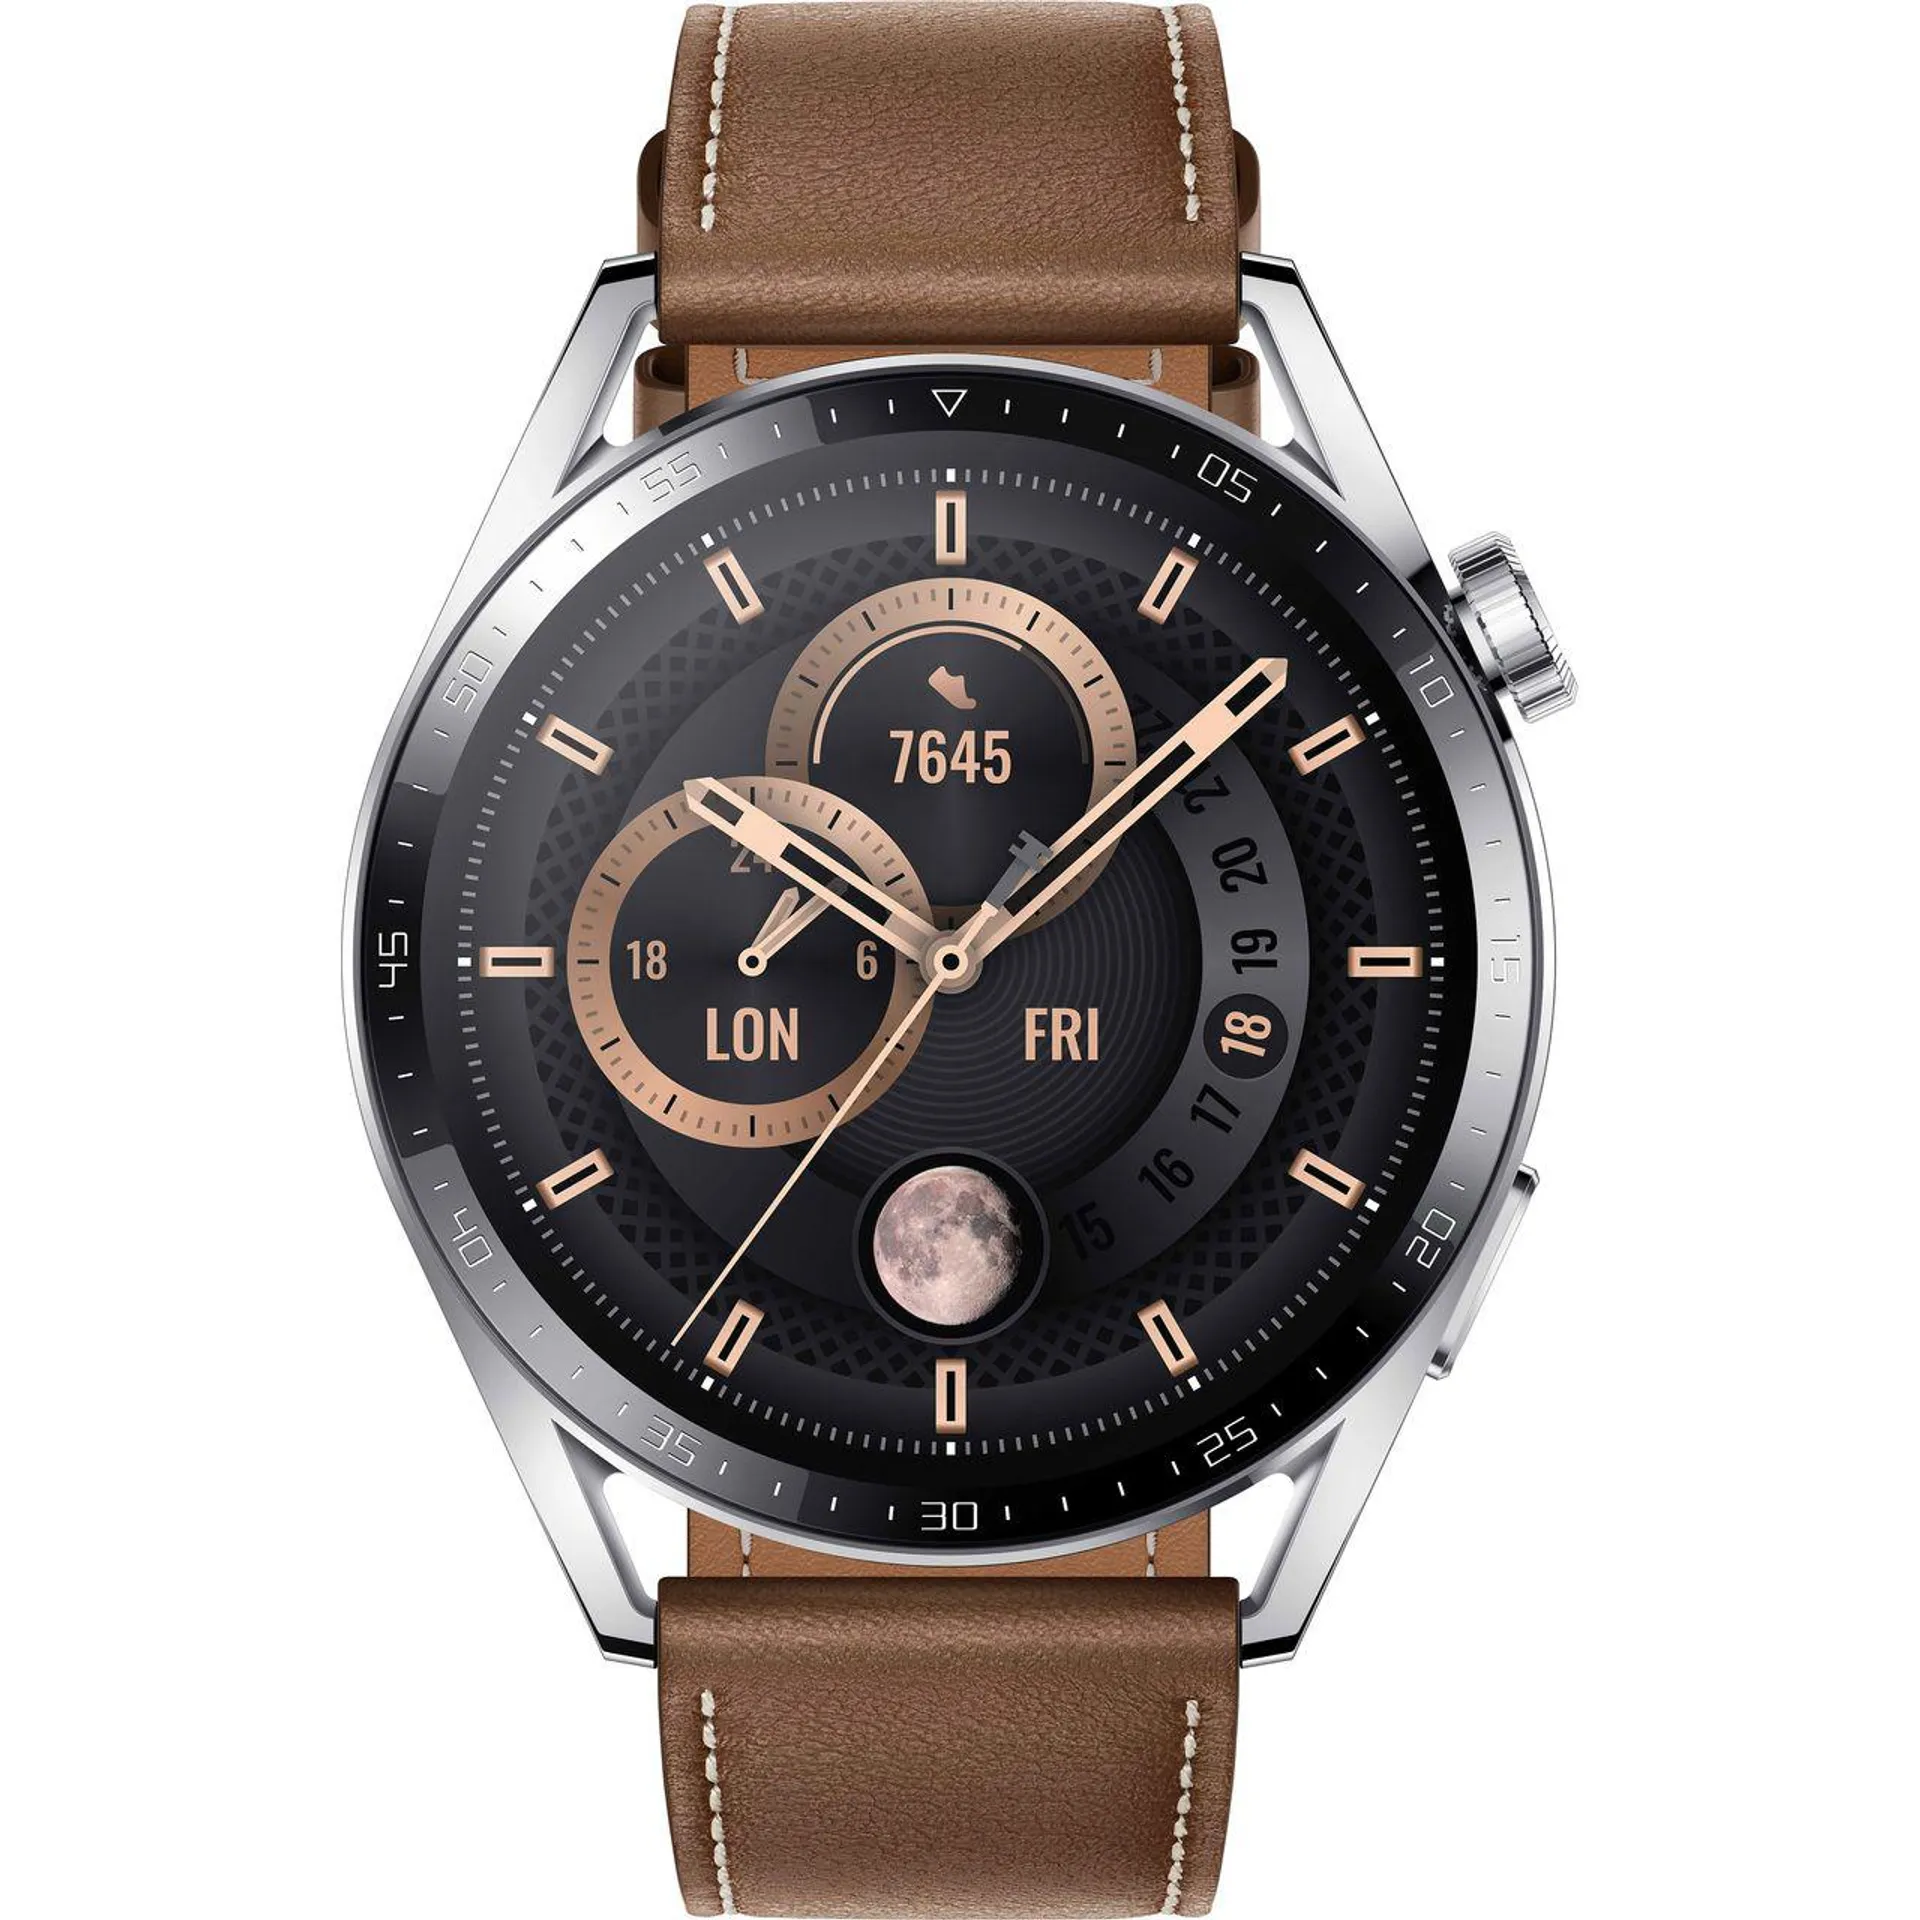 HUAWEI Watch GT3 Smart Watch - Brown